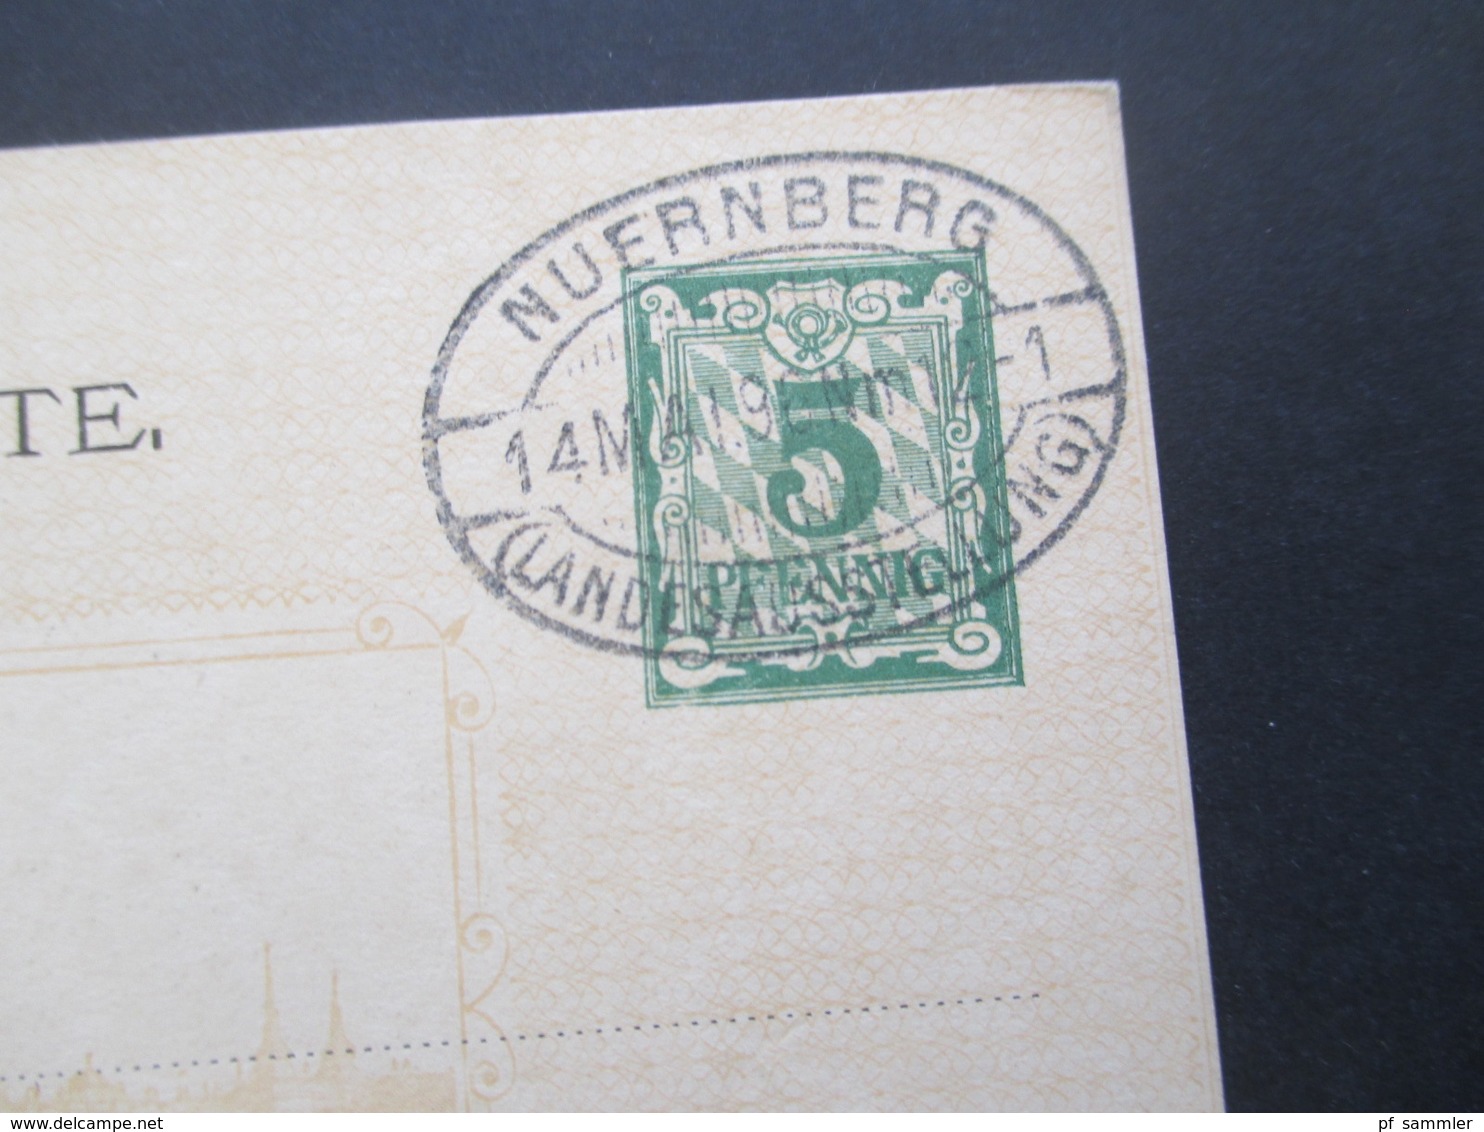 AD Bayern 1896 Sonderpostkarte für die Nürnberger Landesausstellung 3 Stück